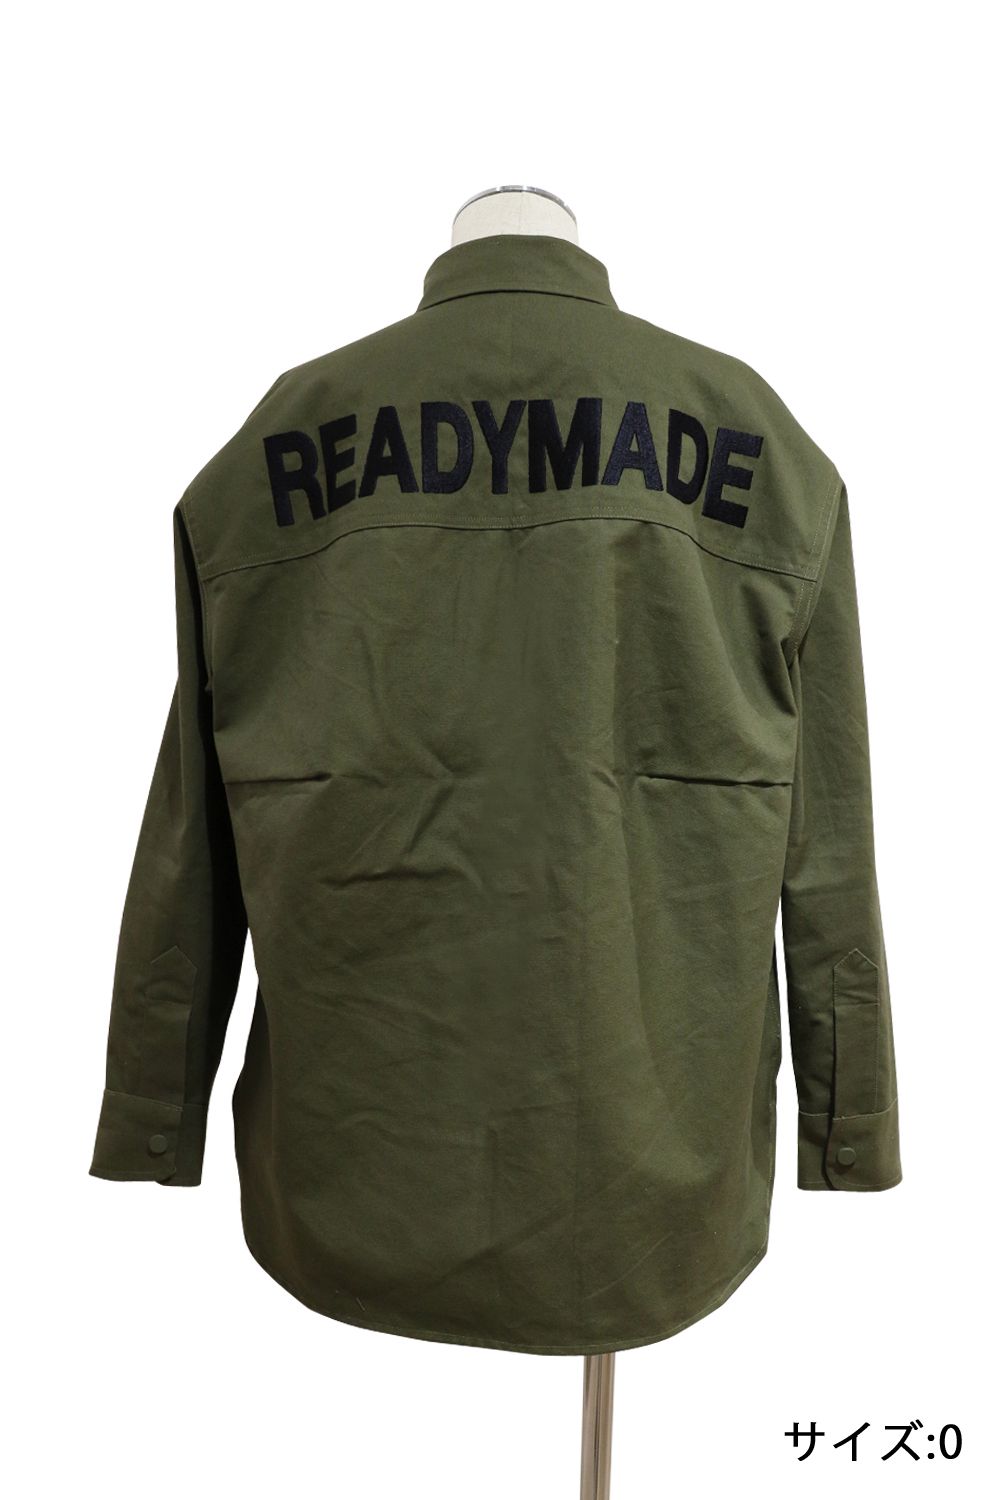 READY MADE レディメイド RE-CO-MU-00-00-139 マルチカラーバンダナオーバーサイズシャツ